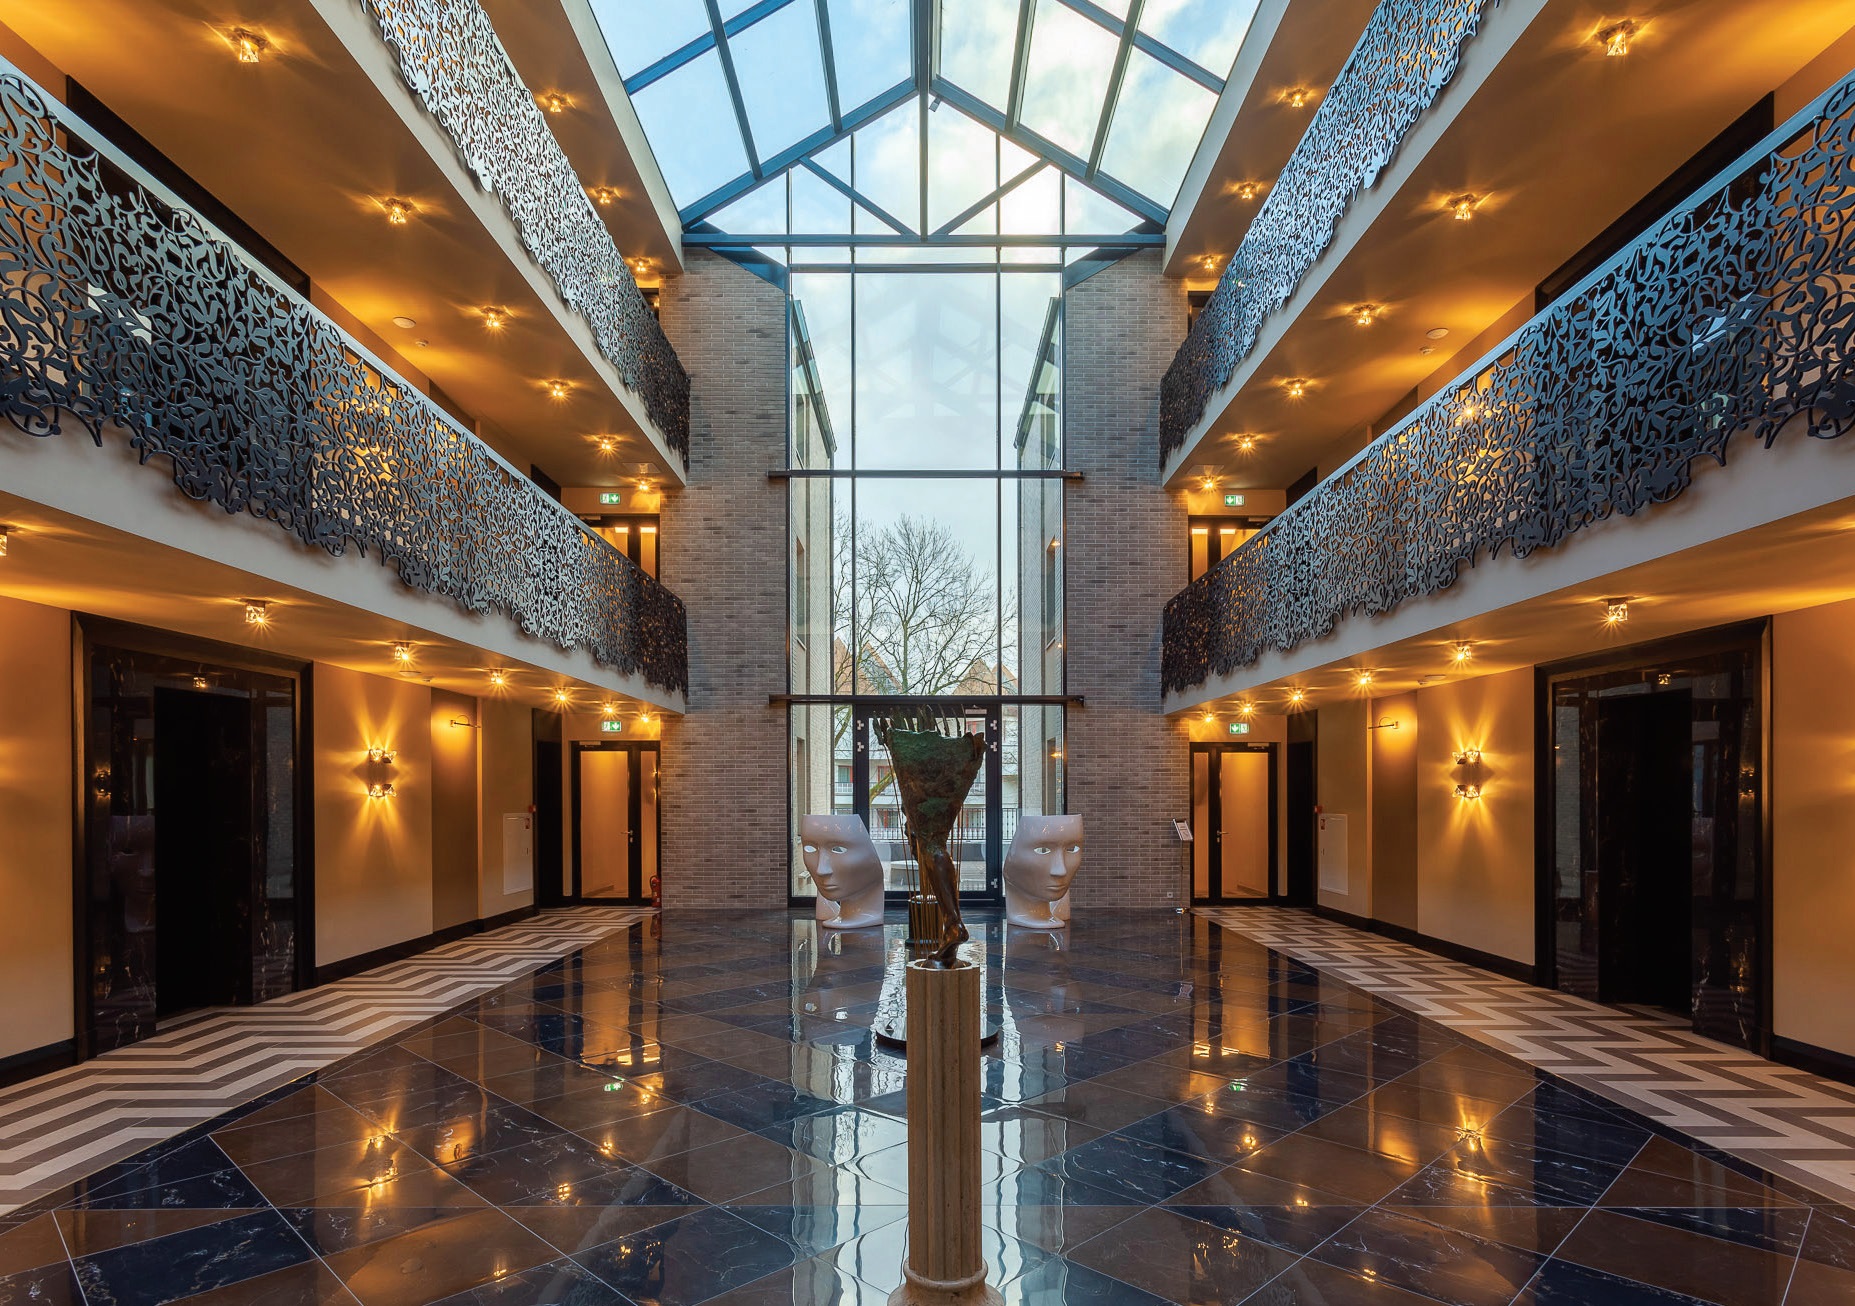 Bene įspūdingiausia viešbučio erdvė – atriumas, kurio didžioji puošmena – lietuvių meistrų lazeriu raižyta metalo tvorelė